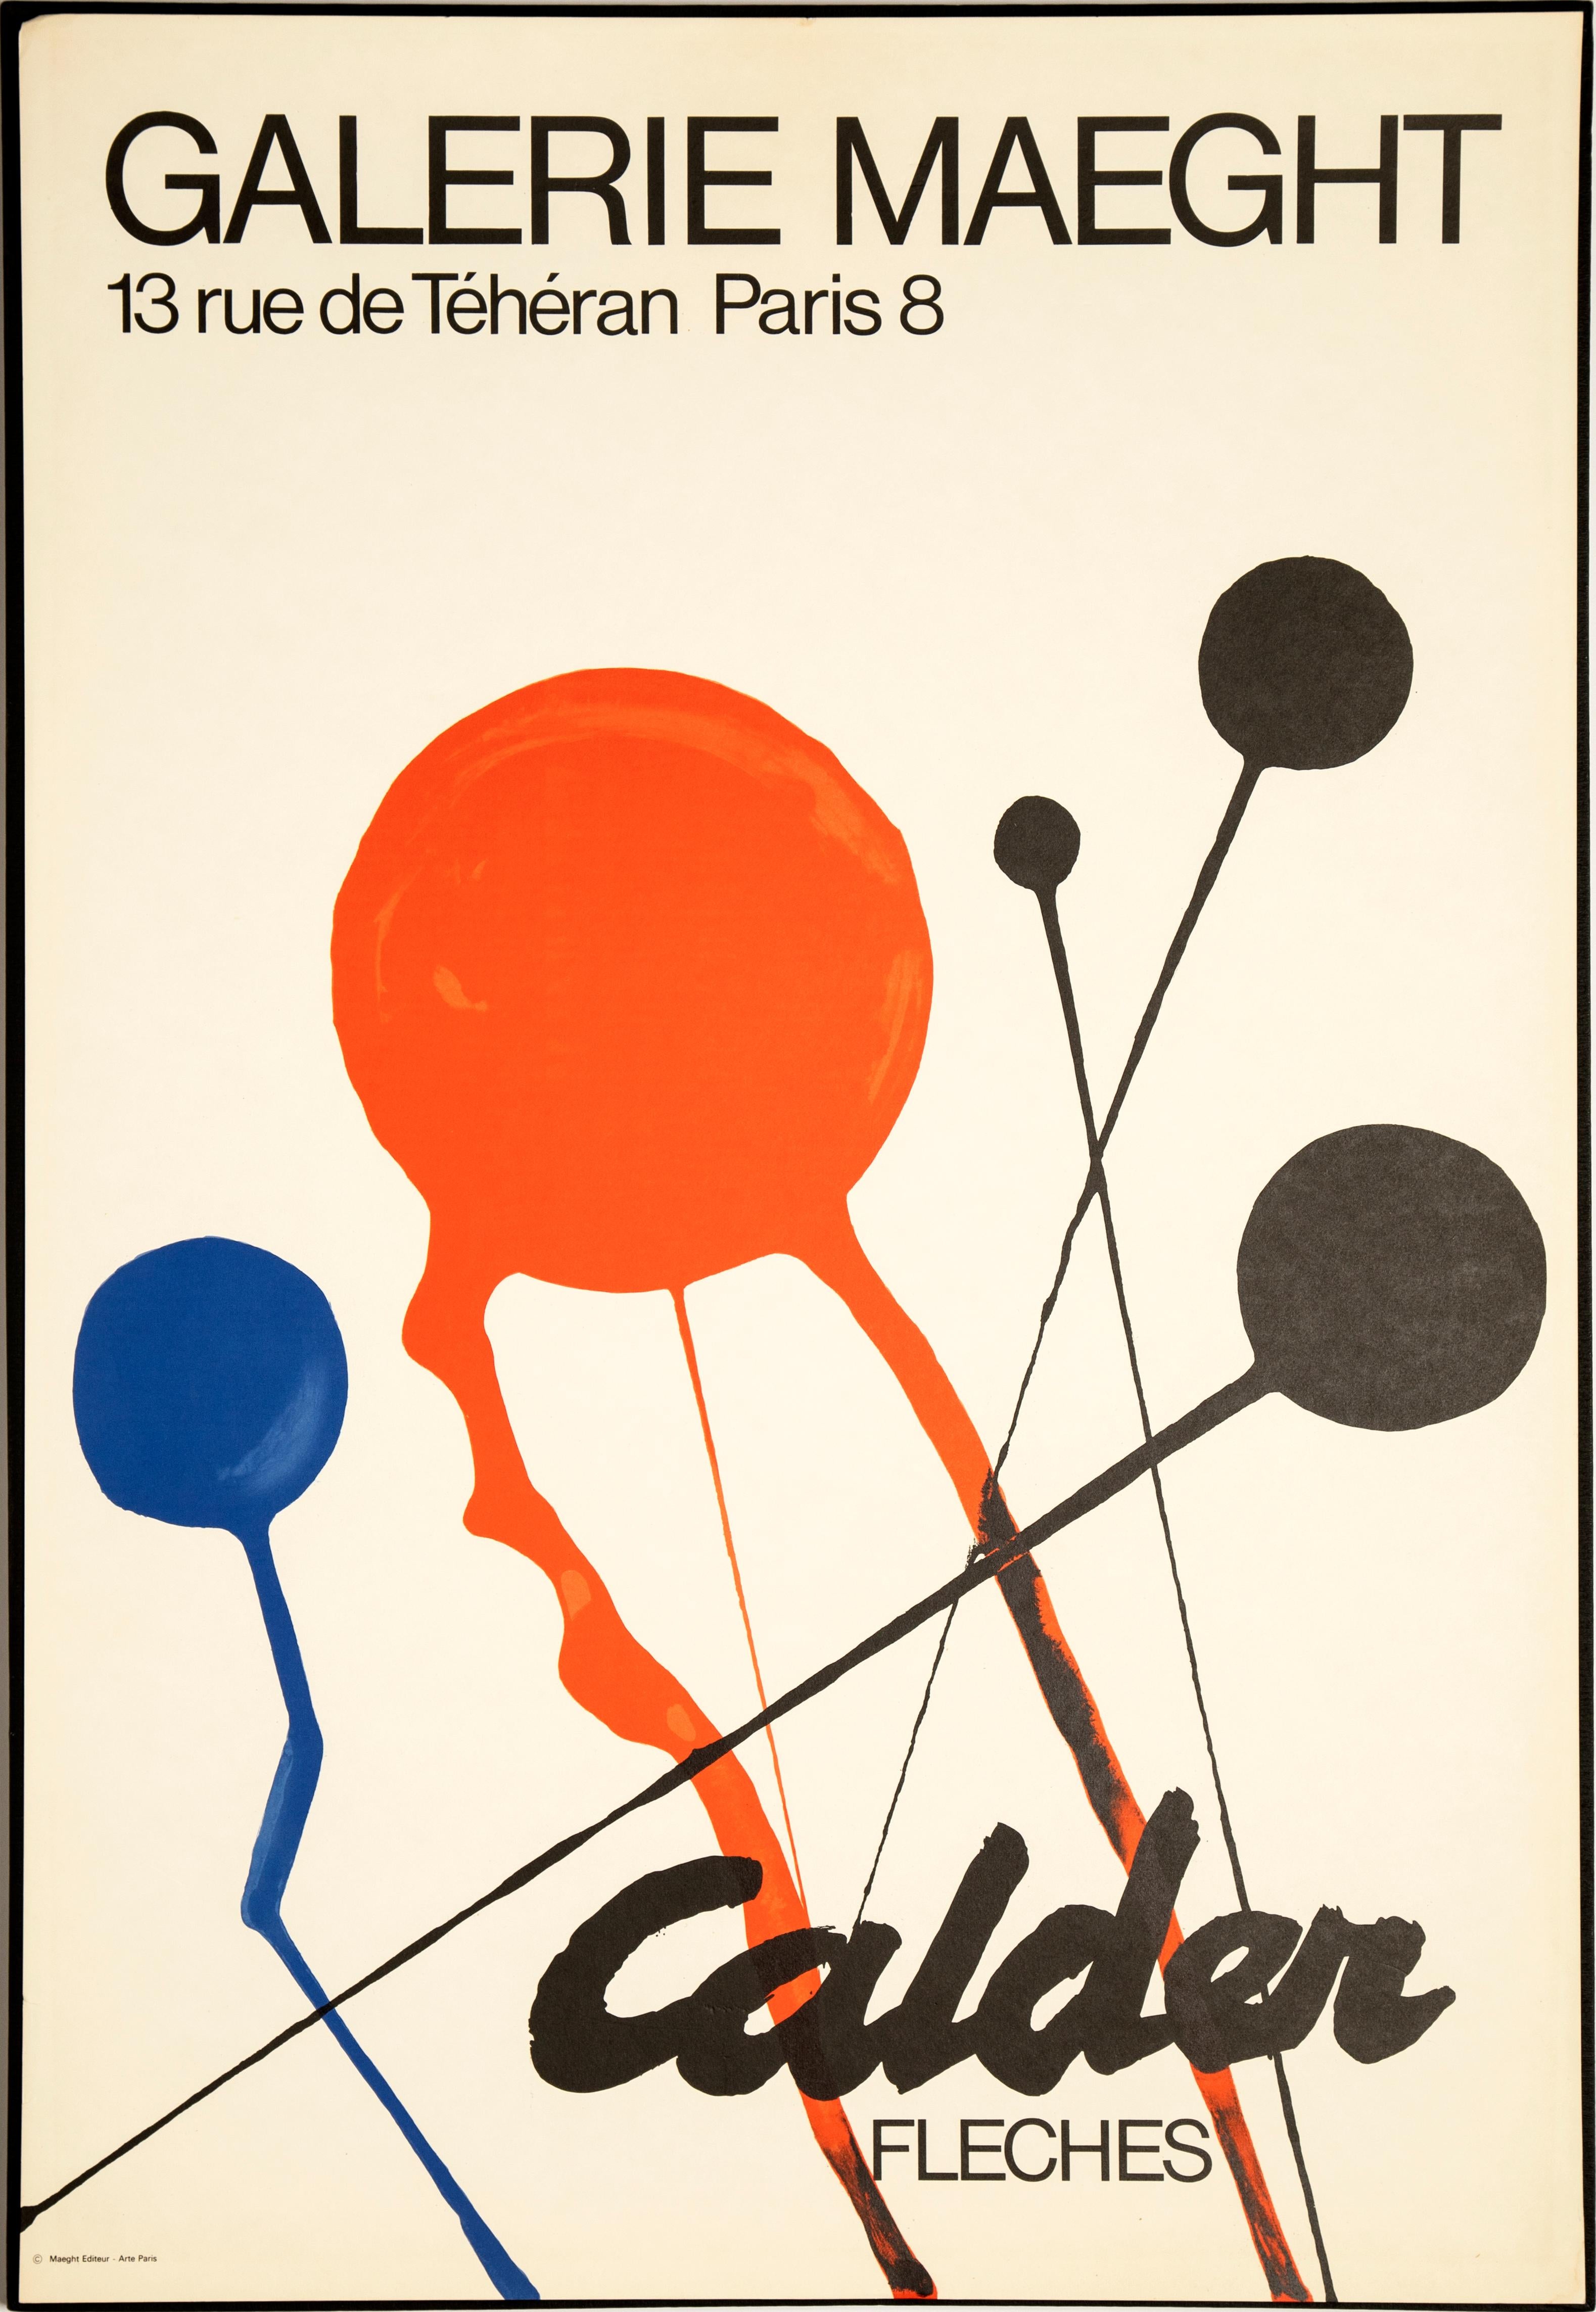 Cinétique Alexander Calder - Fleches « Galerie Maeght », 1970 - Affiche lithographique en vente